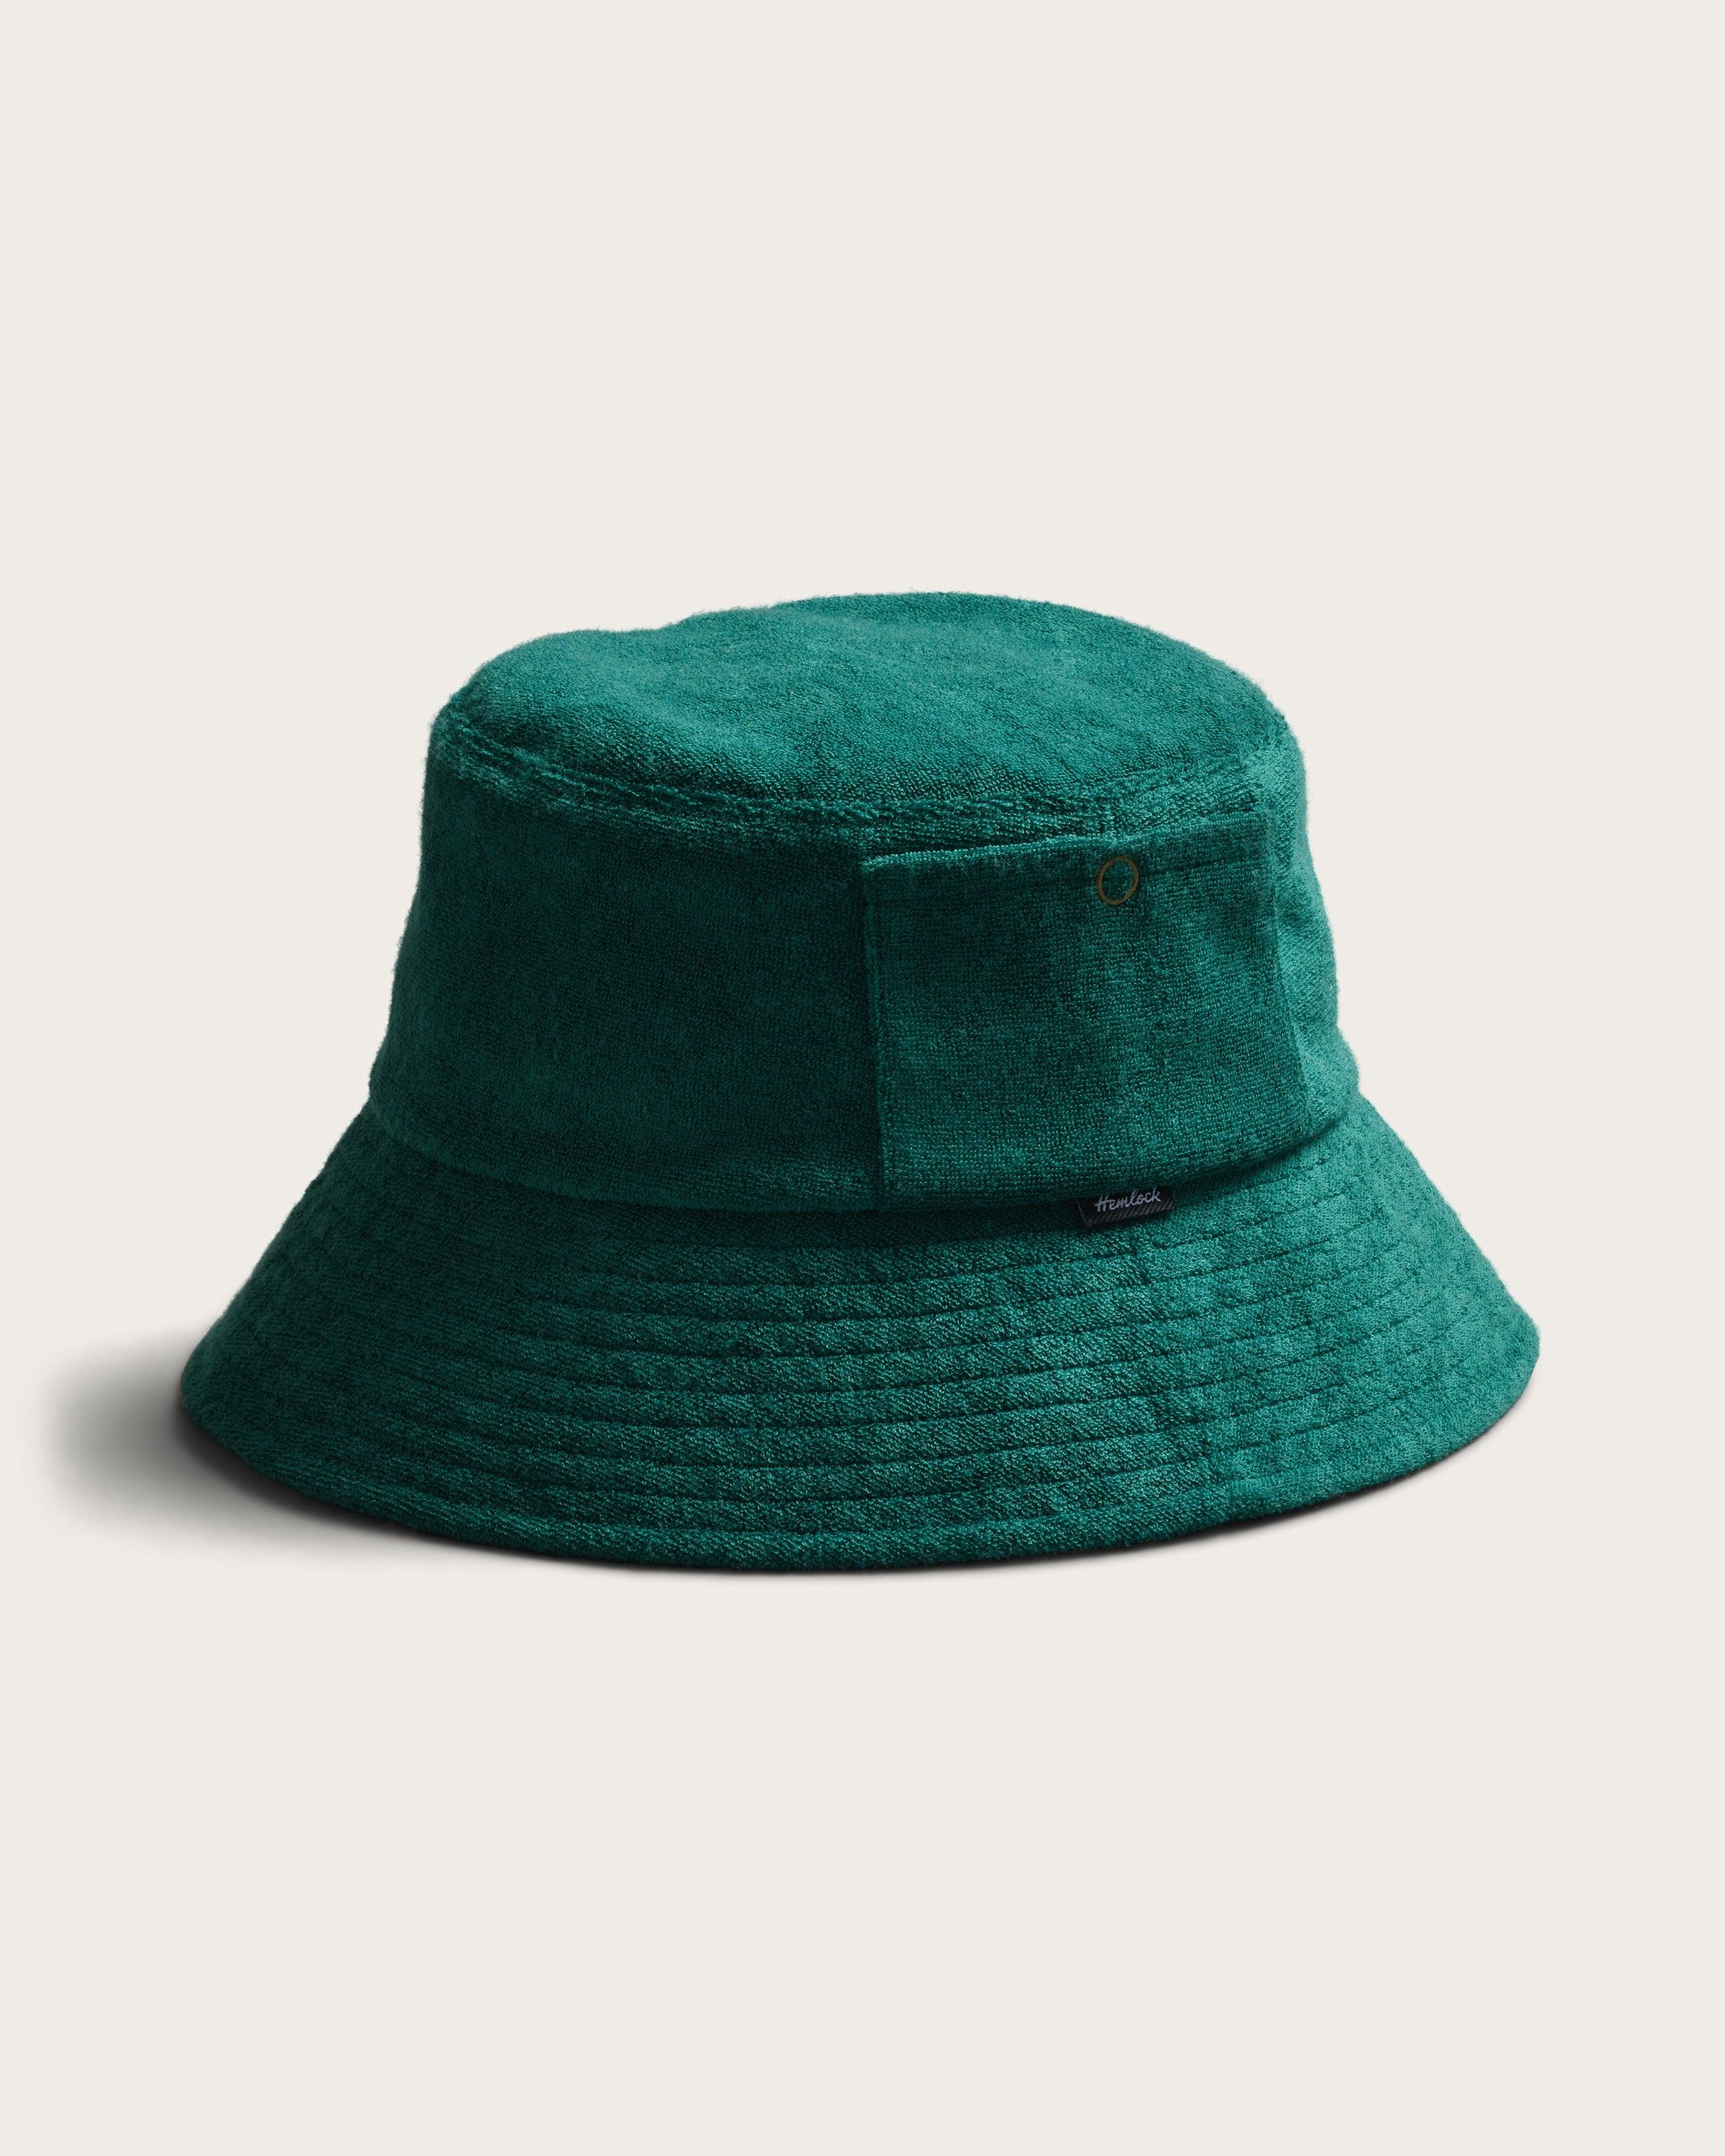 Hemlock Marina Terry Bucket Hat in Emerald detail